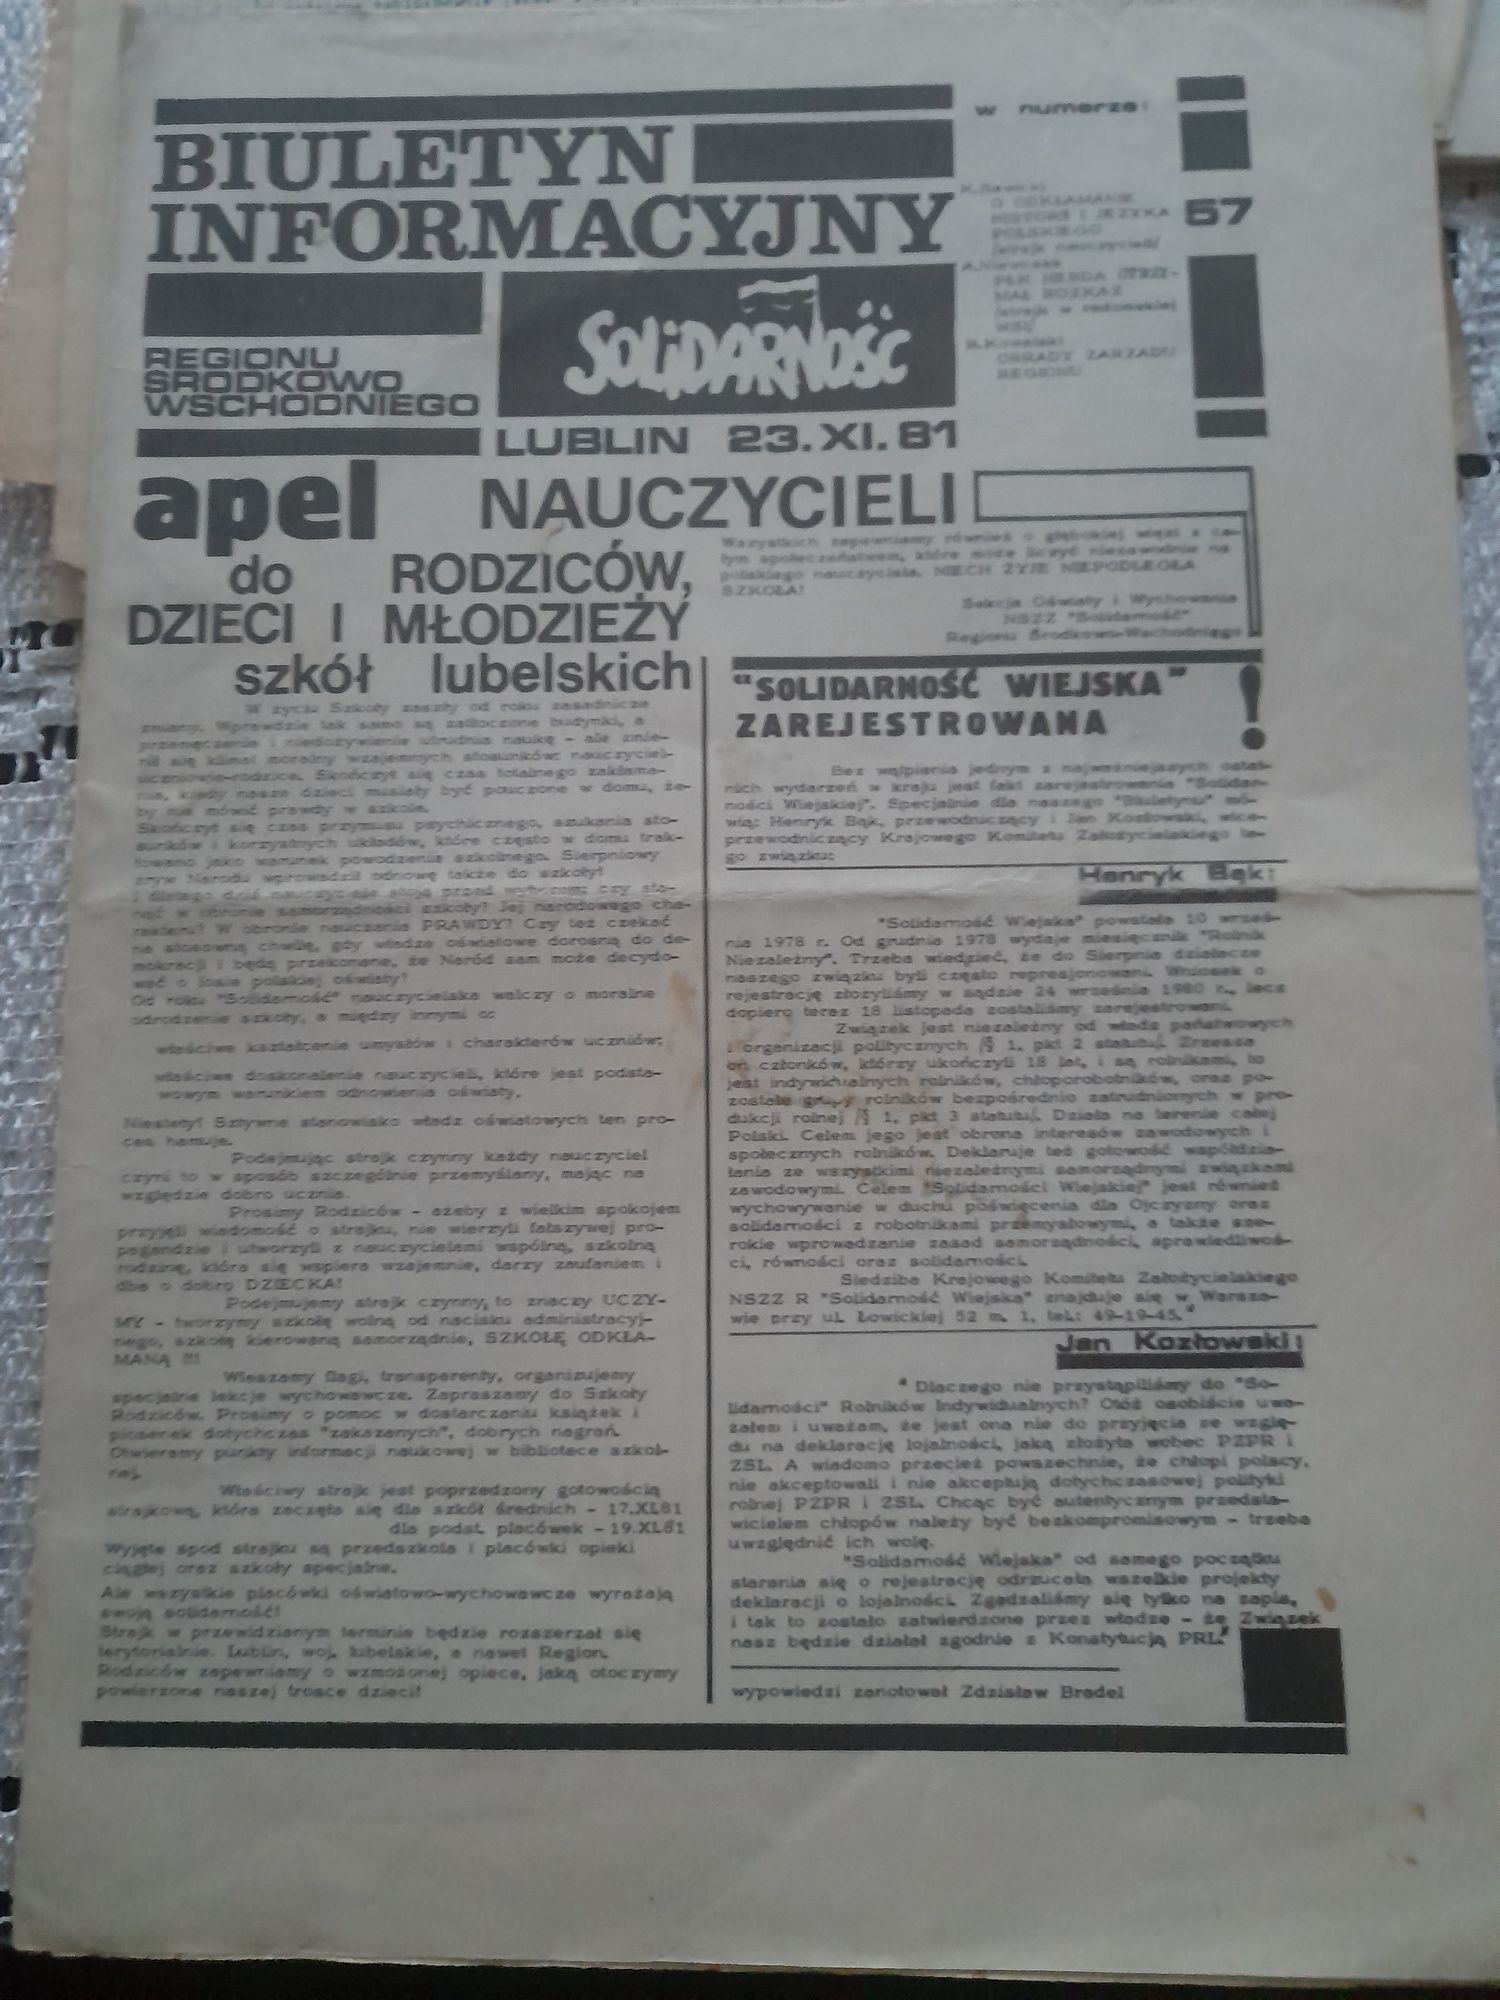 Dokumenty biuletyn informator zjazdowy solidarności 36 szt z 1981 r